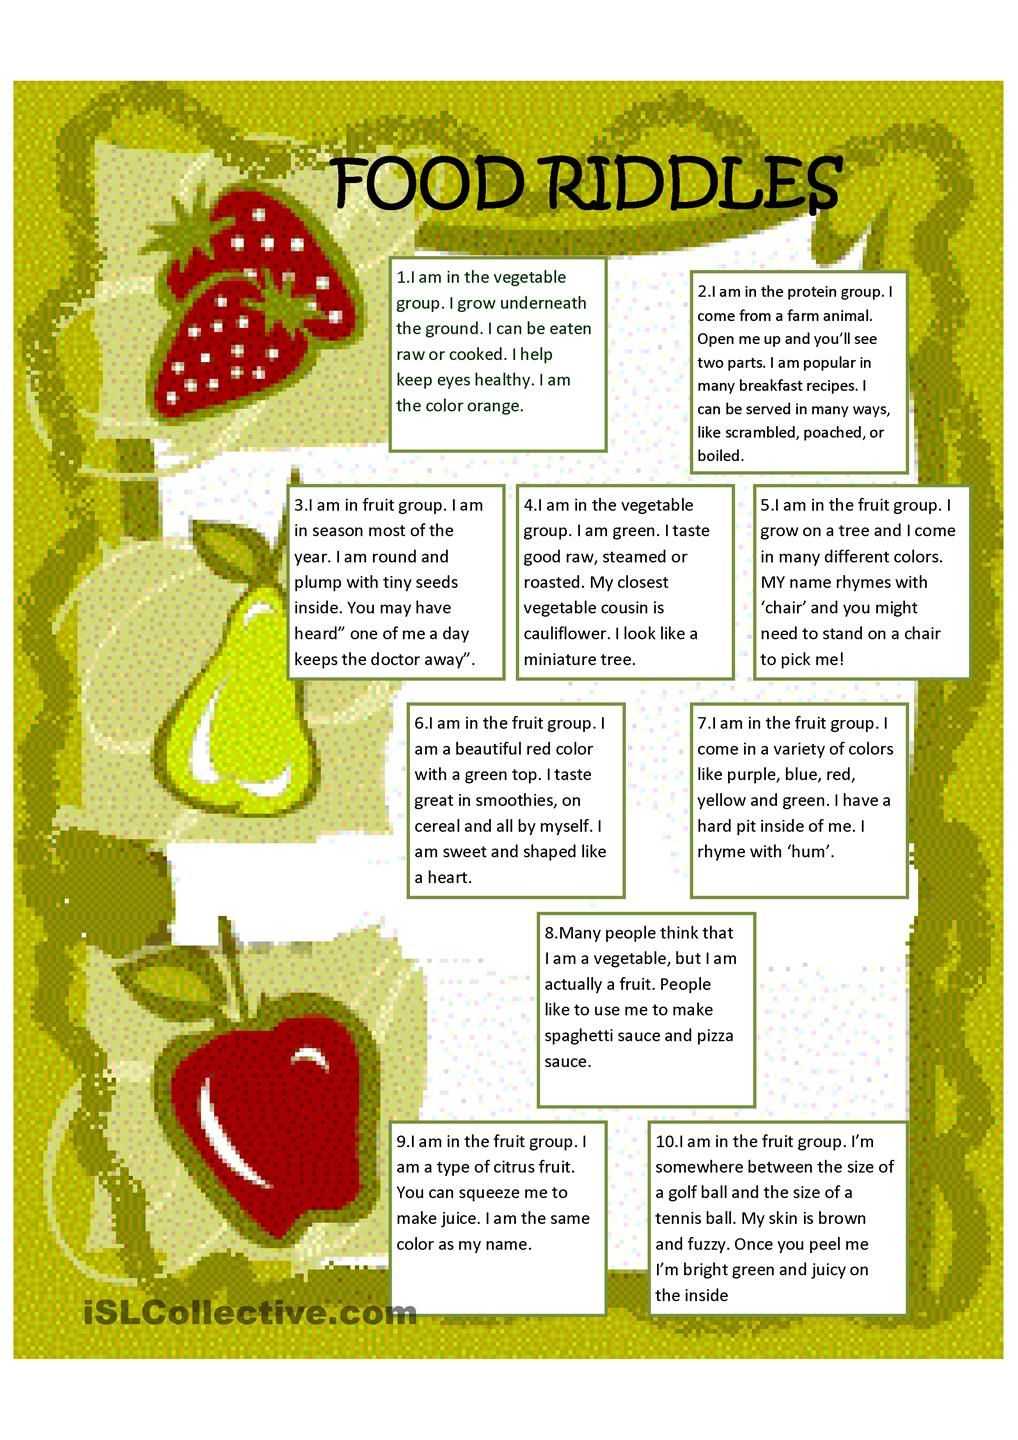 Загадки про фрукты